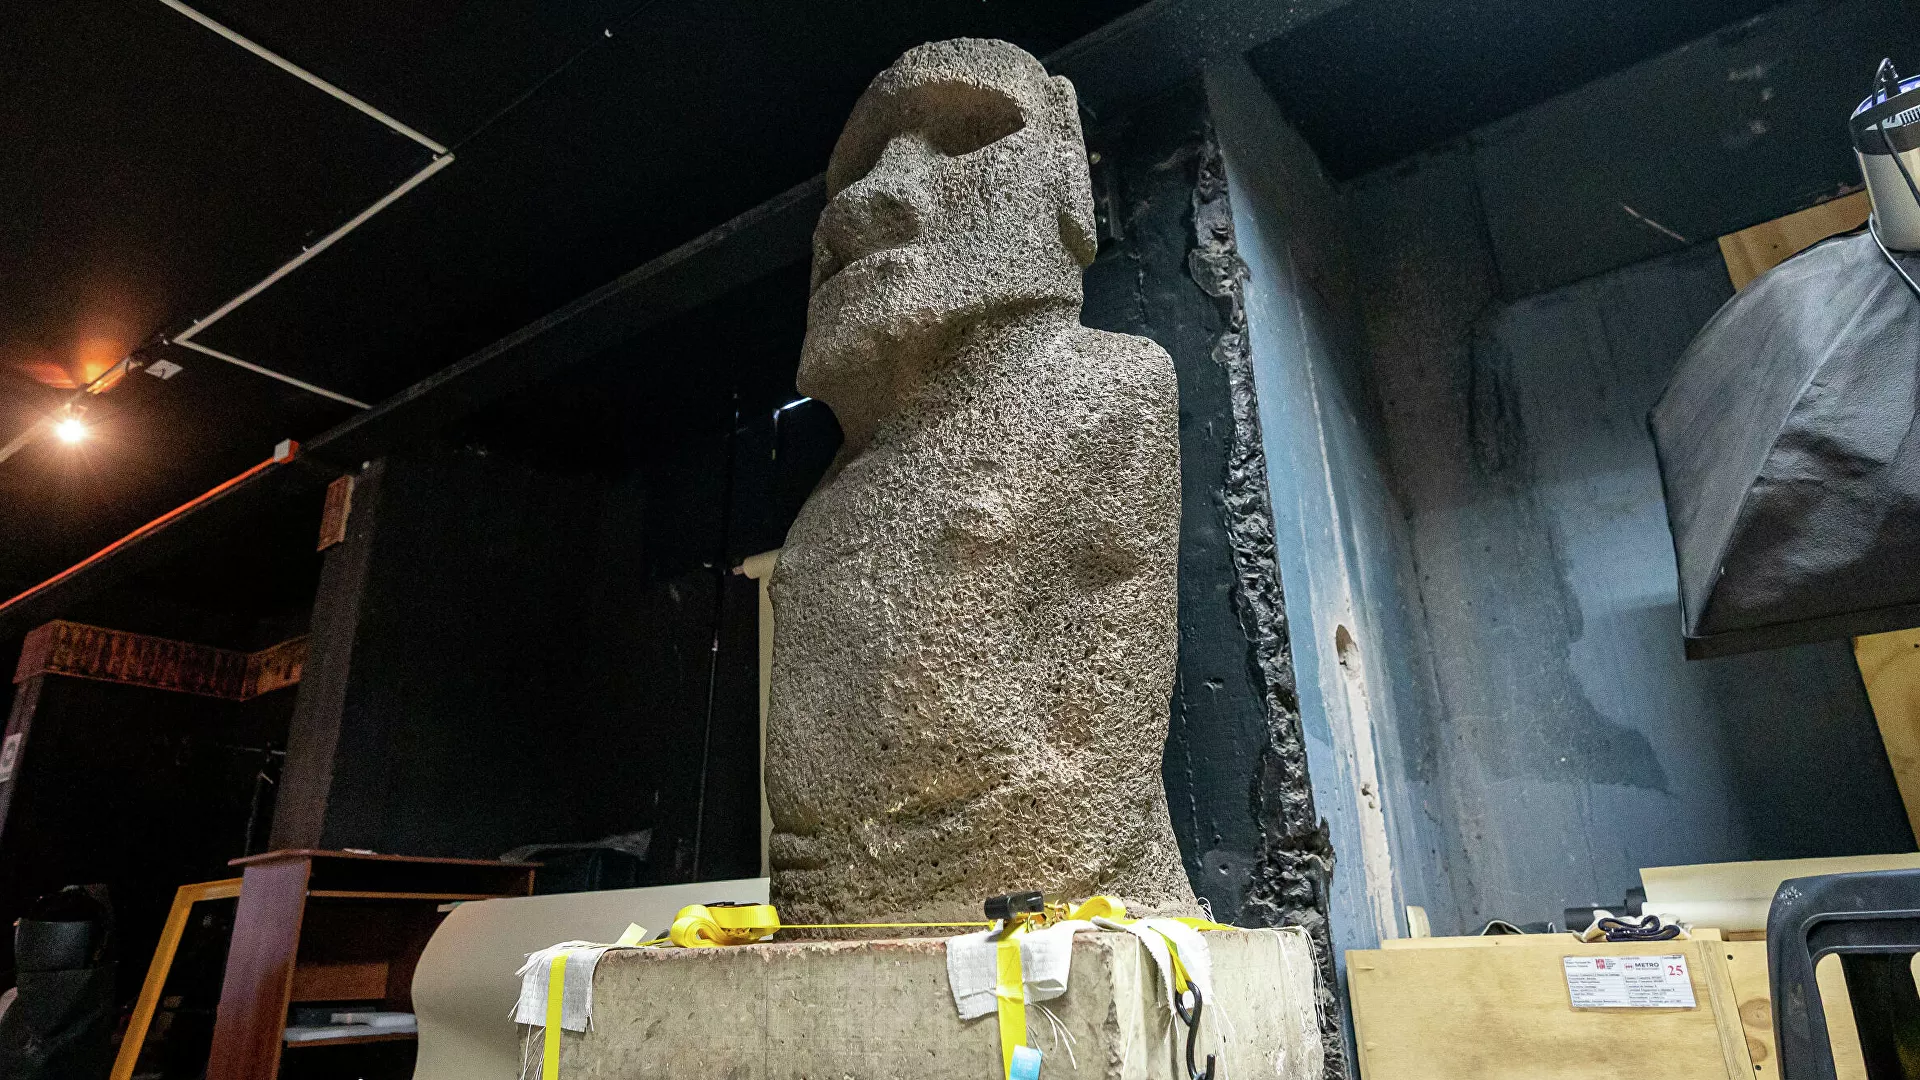  La estatua moai más antigua retorna a su lugar de origen tras 152 años | Fotos